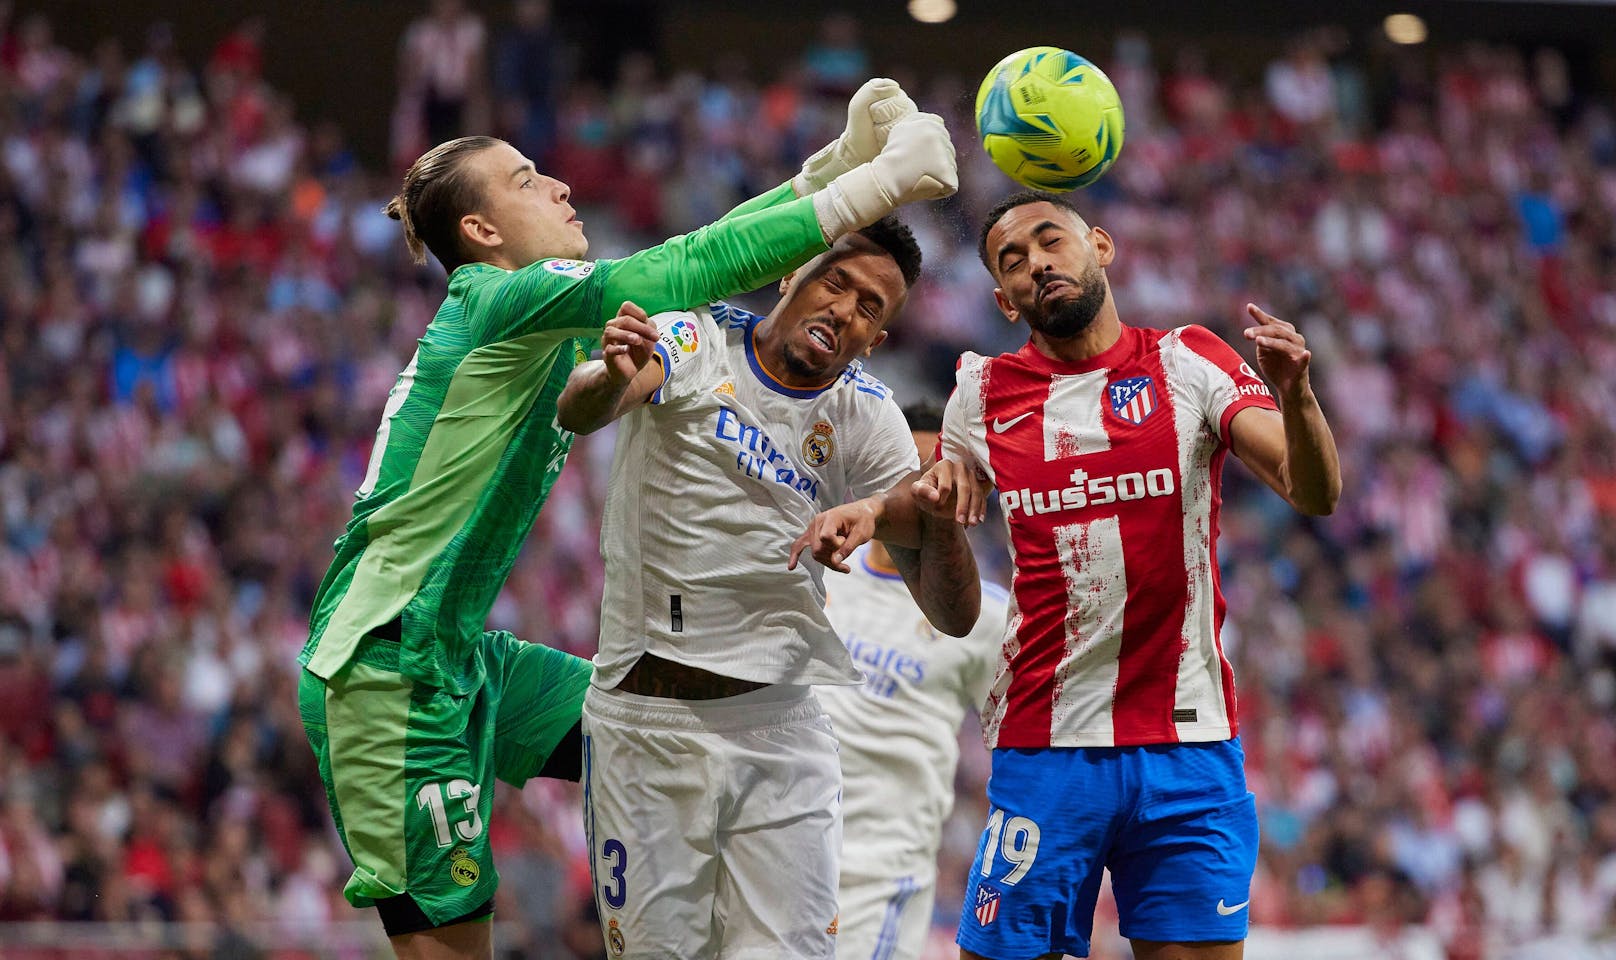 Real Madrid kassiert Derby-Pleite gegen Atletico